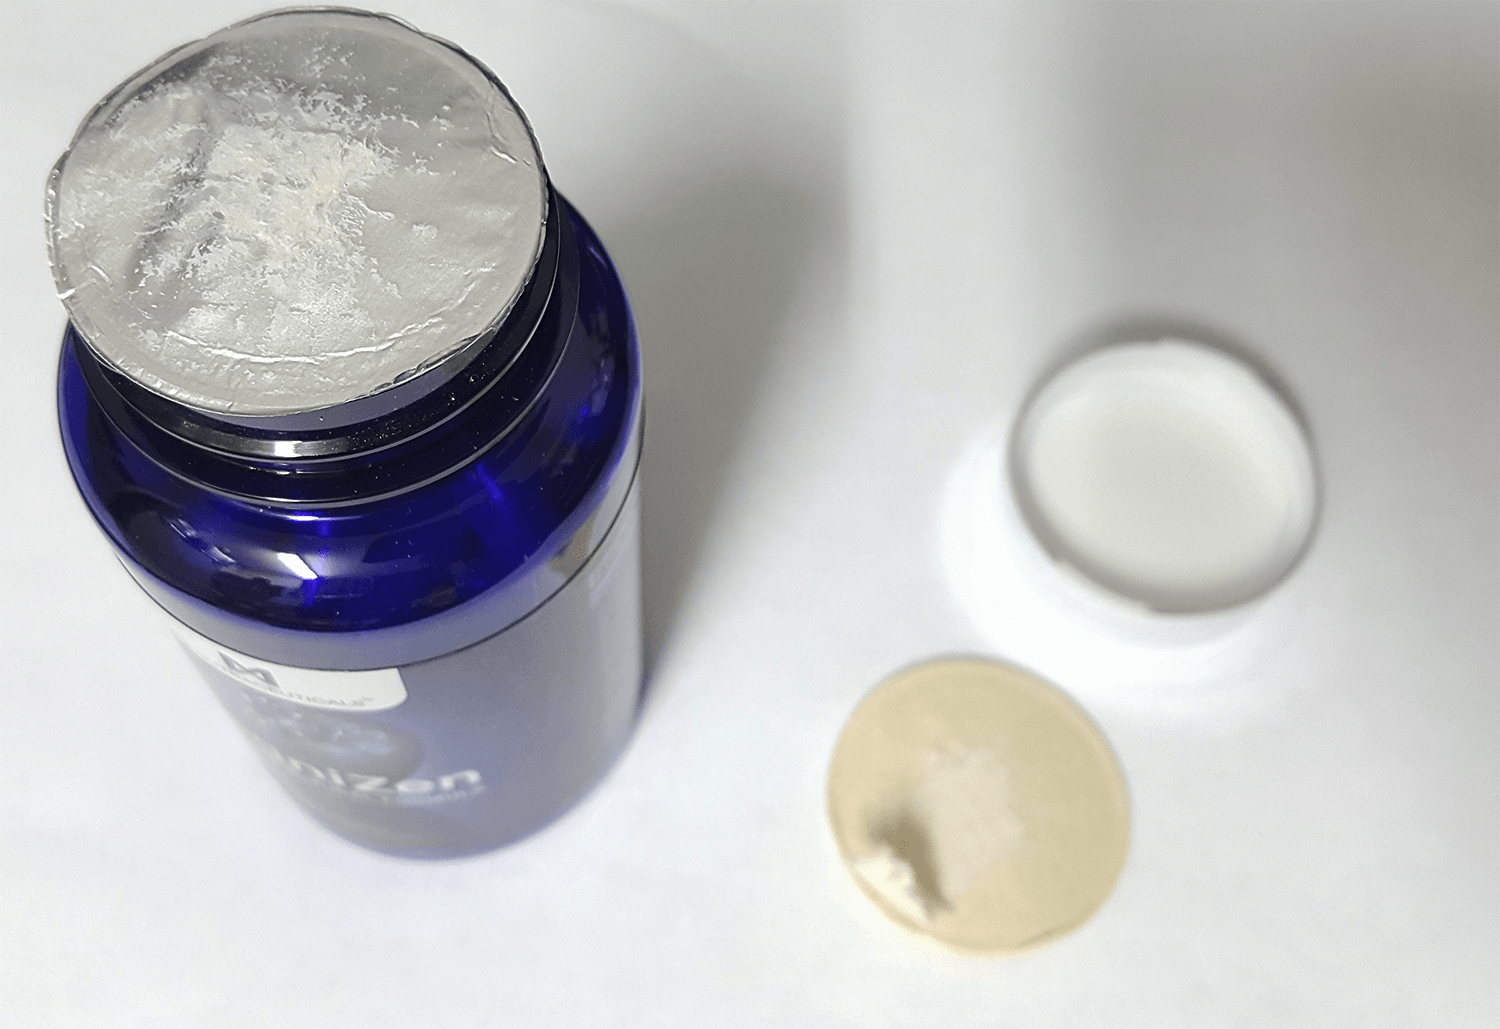 KogniZen bottle opening seal showing damage